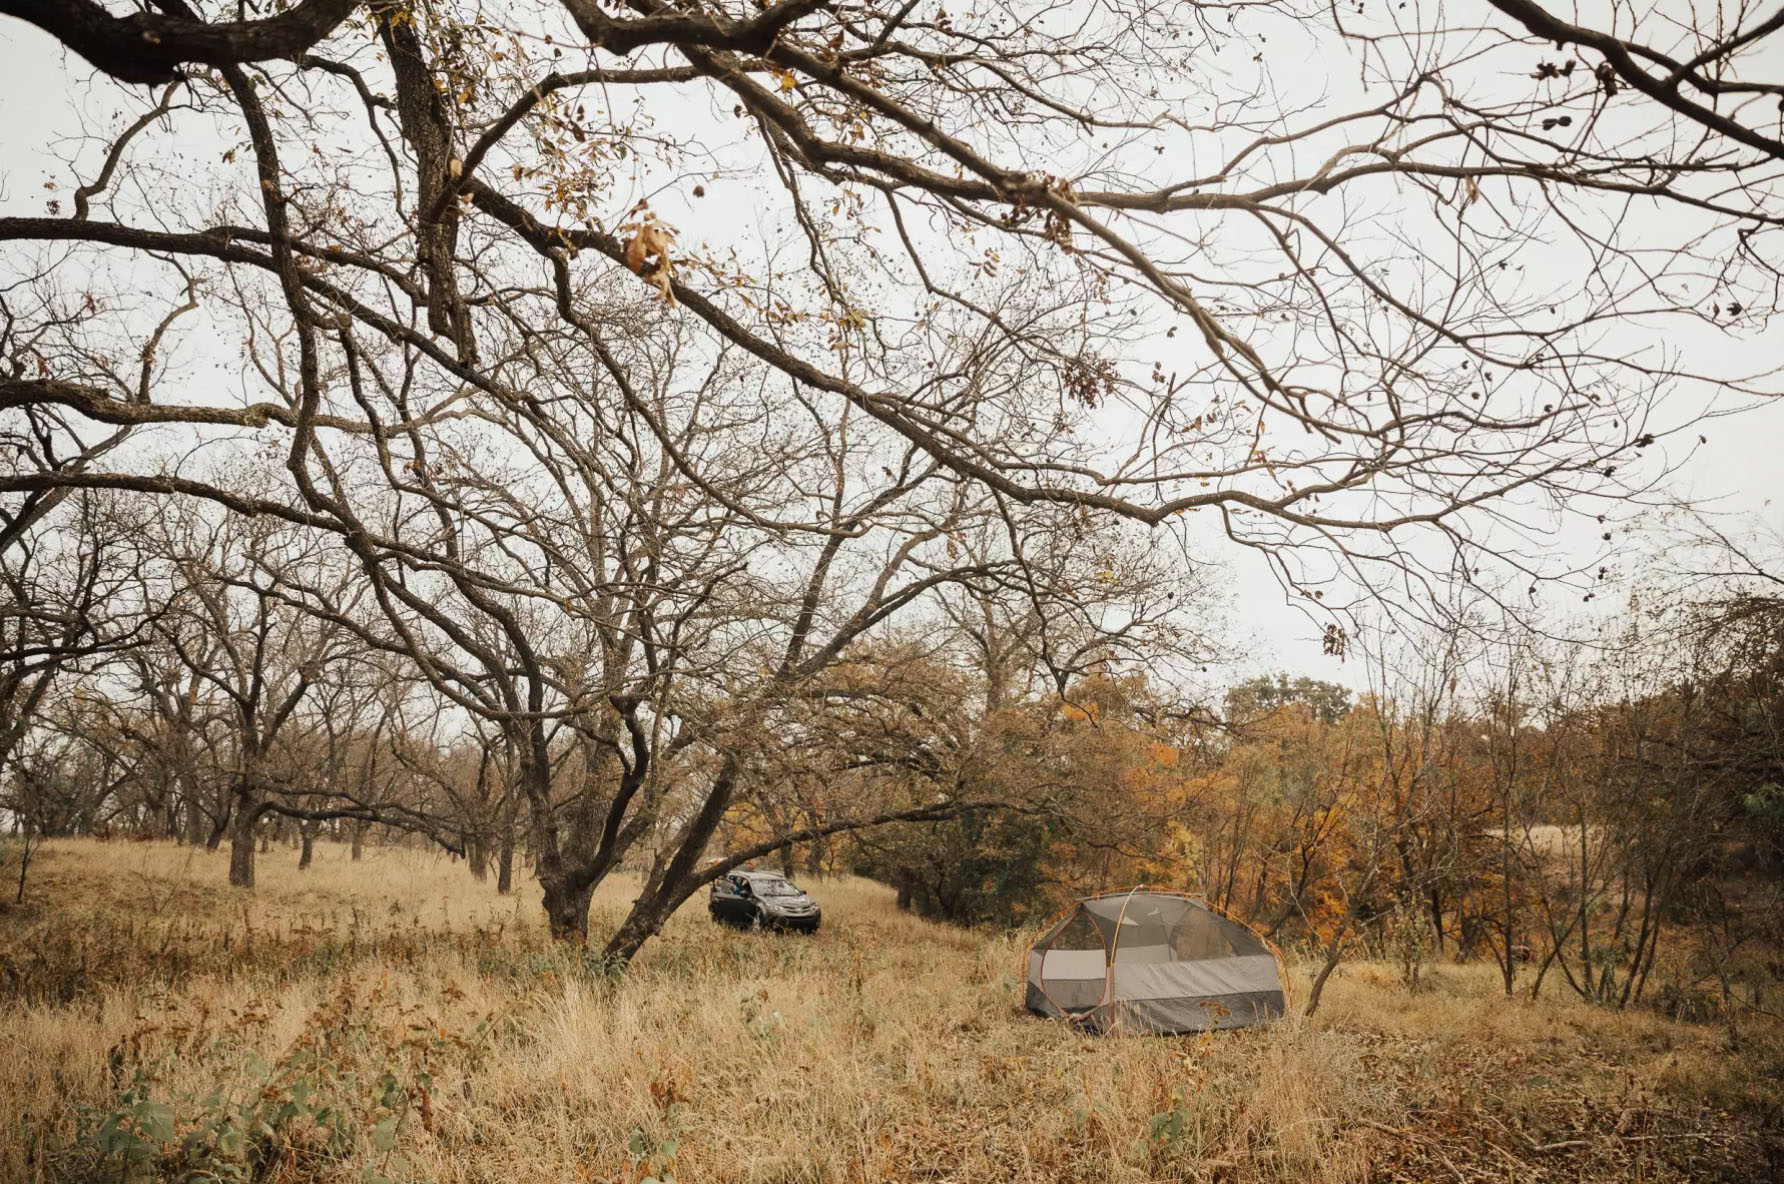 Lav Utstyr Gård I Texas tilbyr rimelig camping